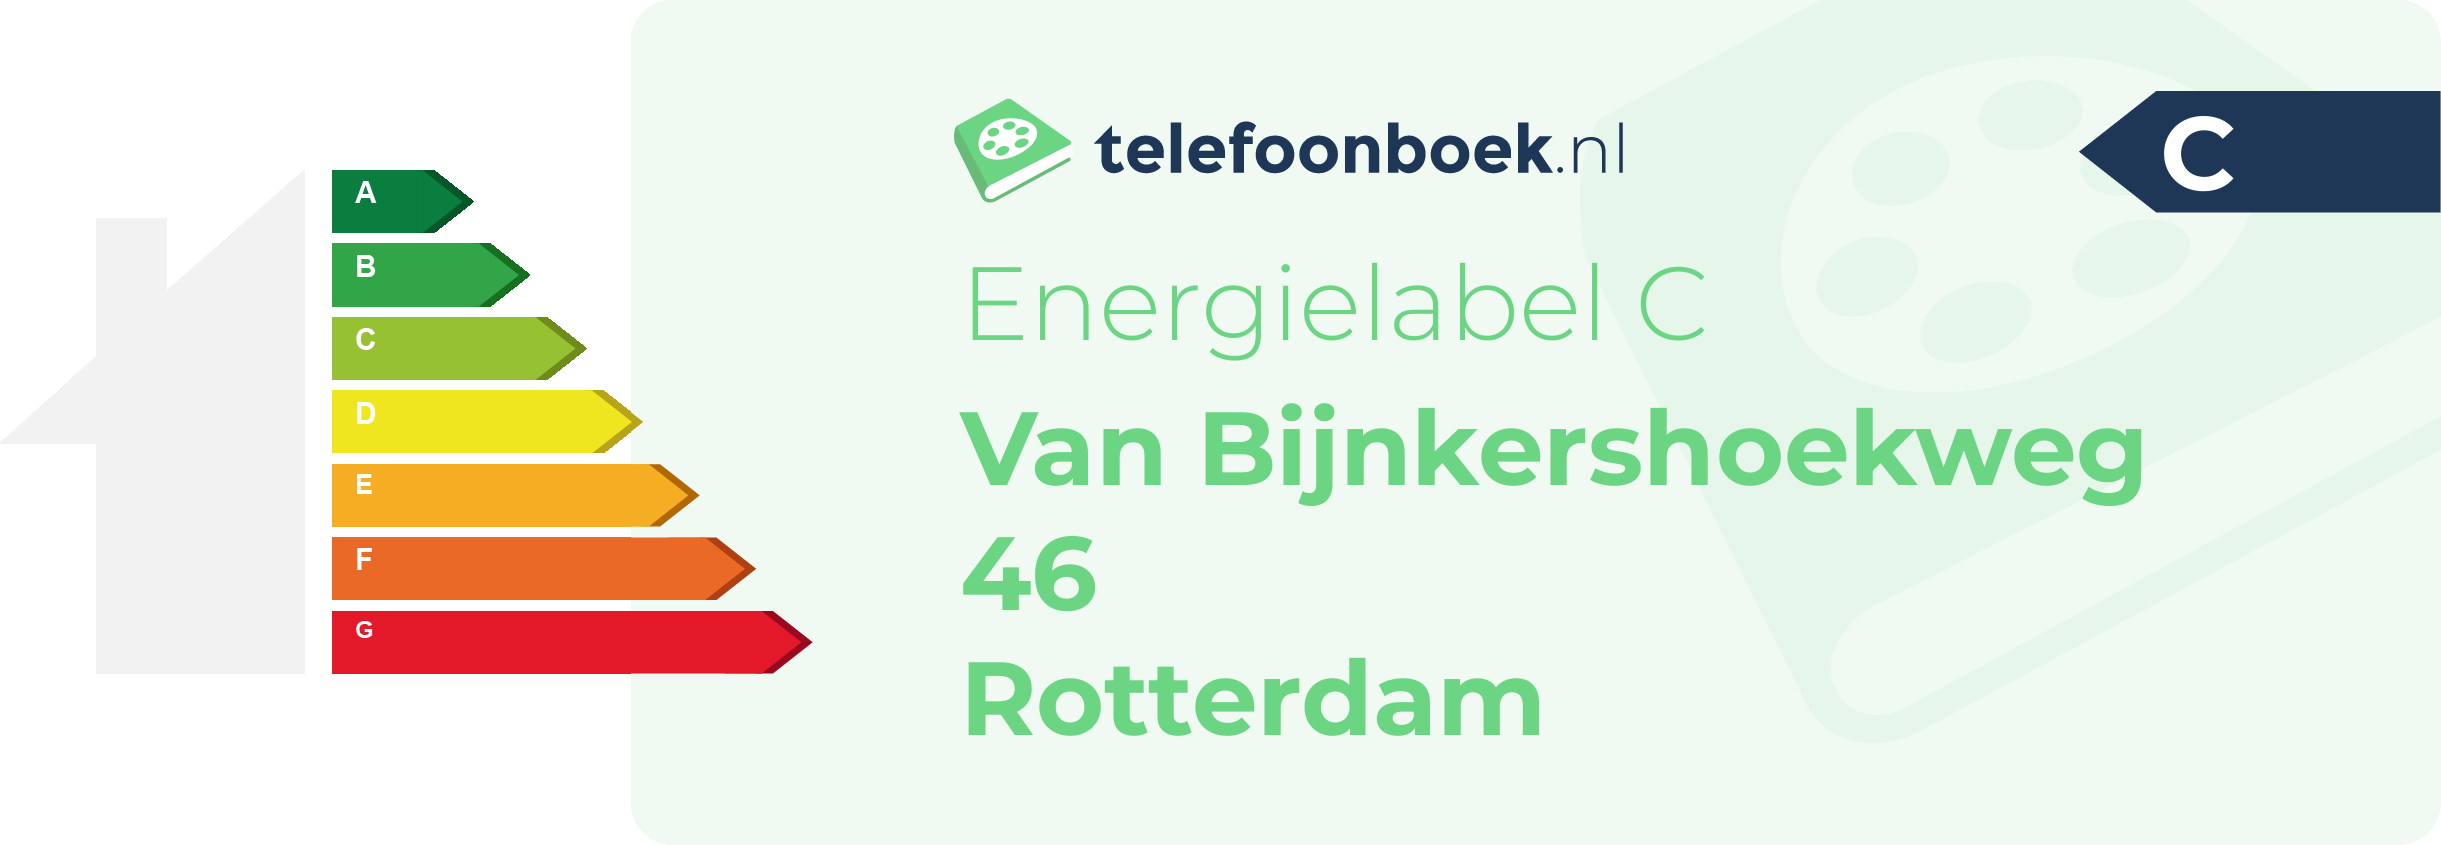 Energielabel Van Bijnkershoekweg 46 Rotterdam